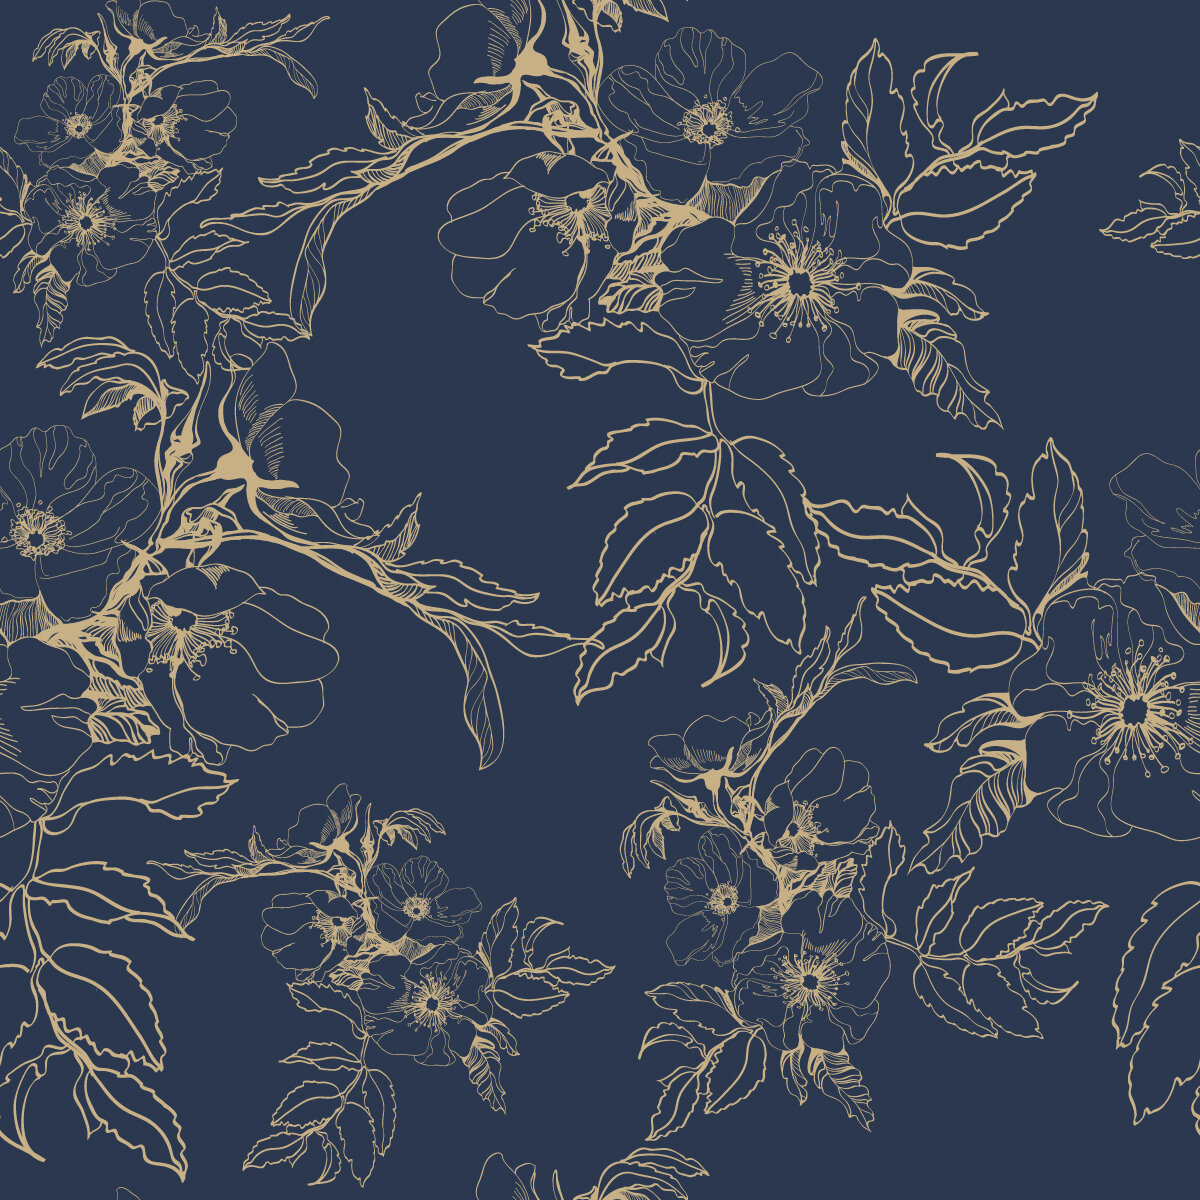 vintage blue floral wallpaper